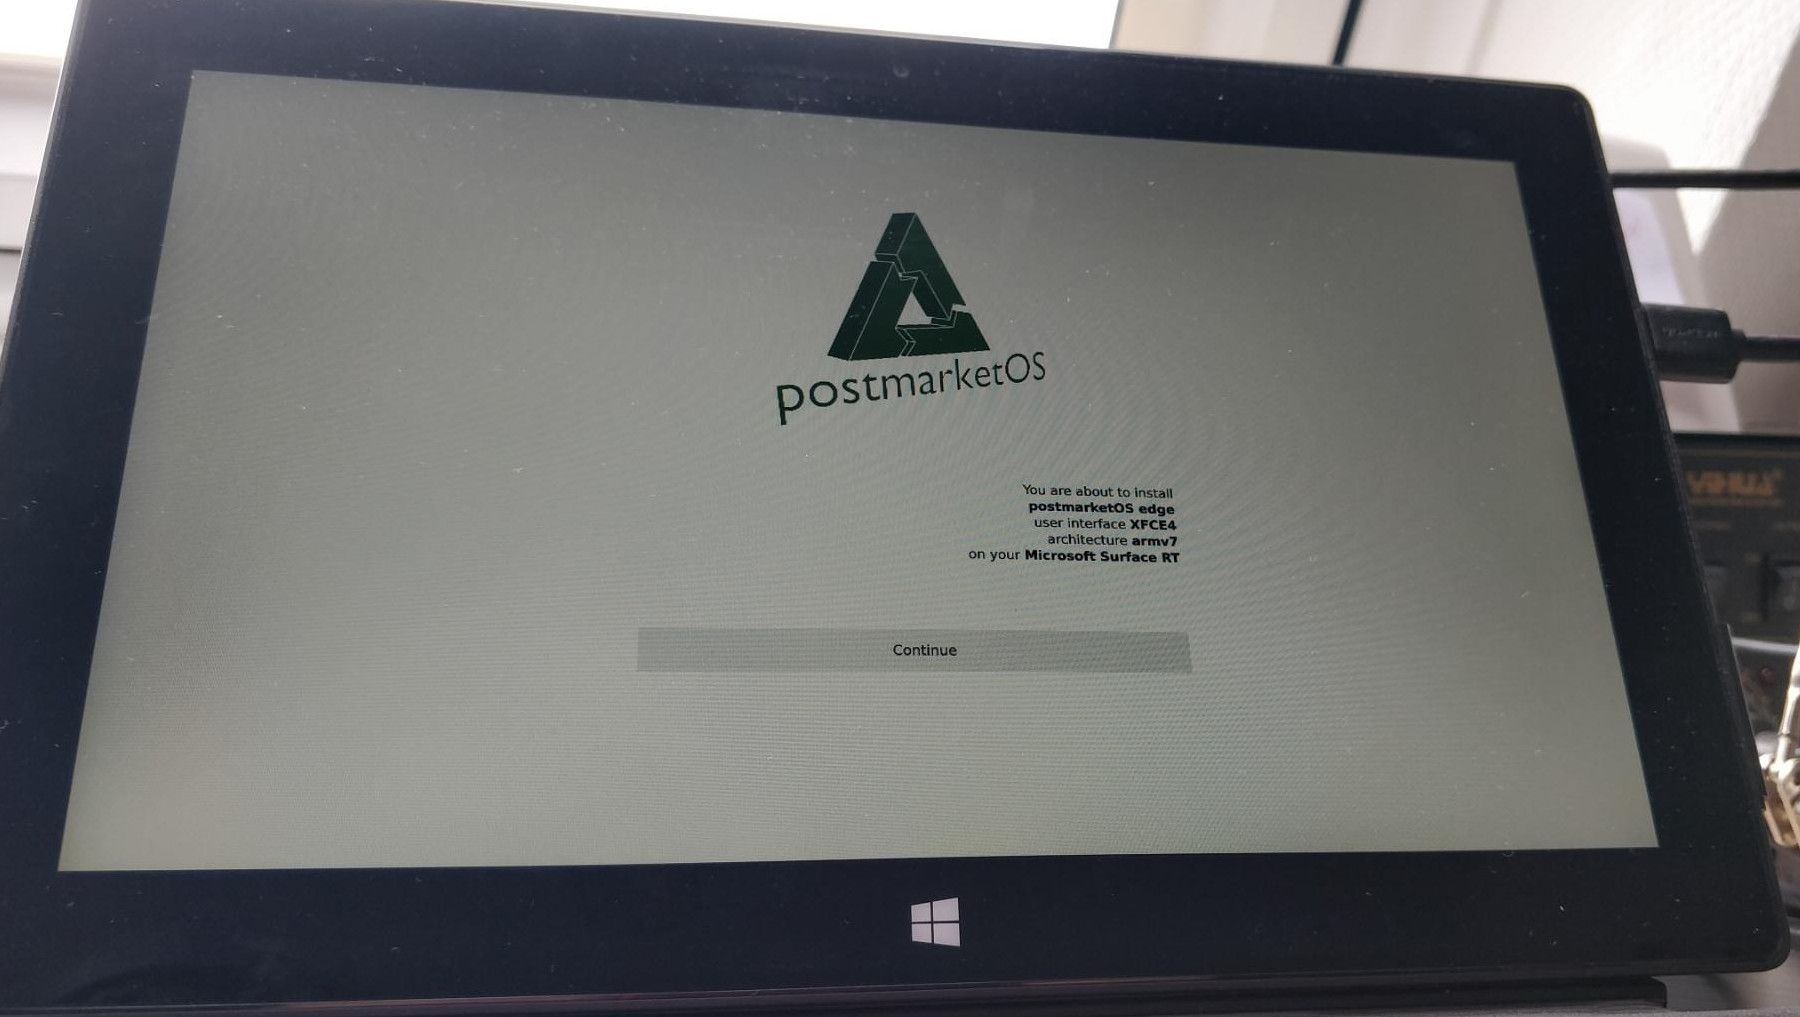 Installer landing screen for postmarketOS on the SurfaceRT